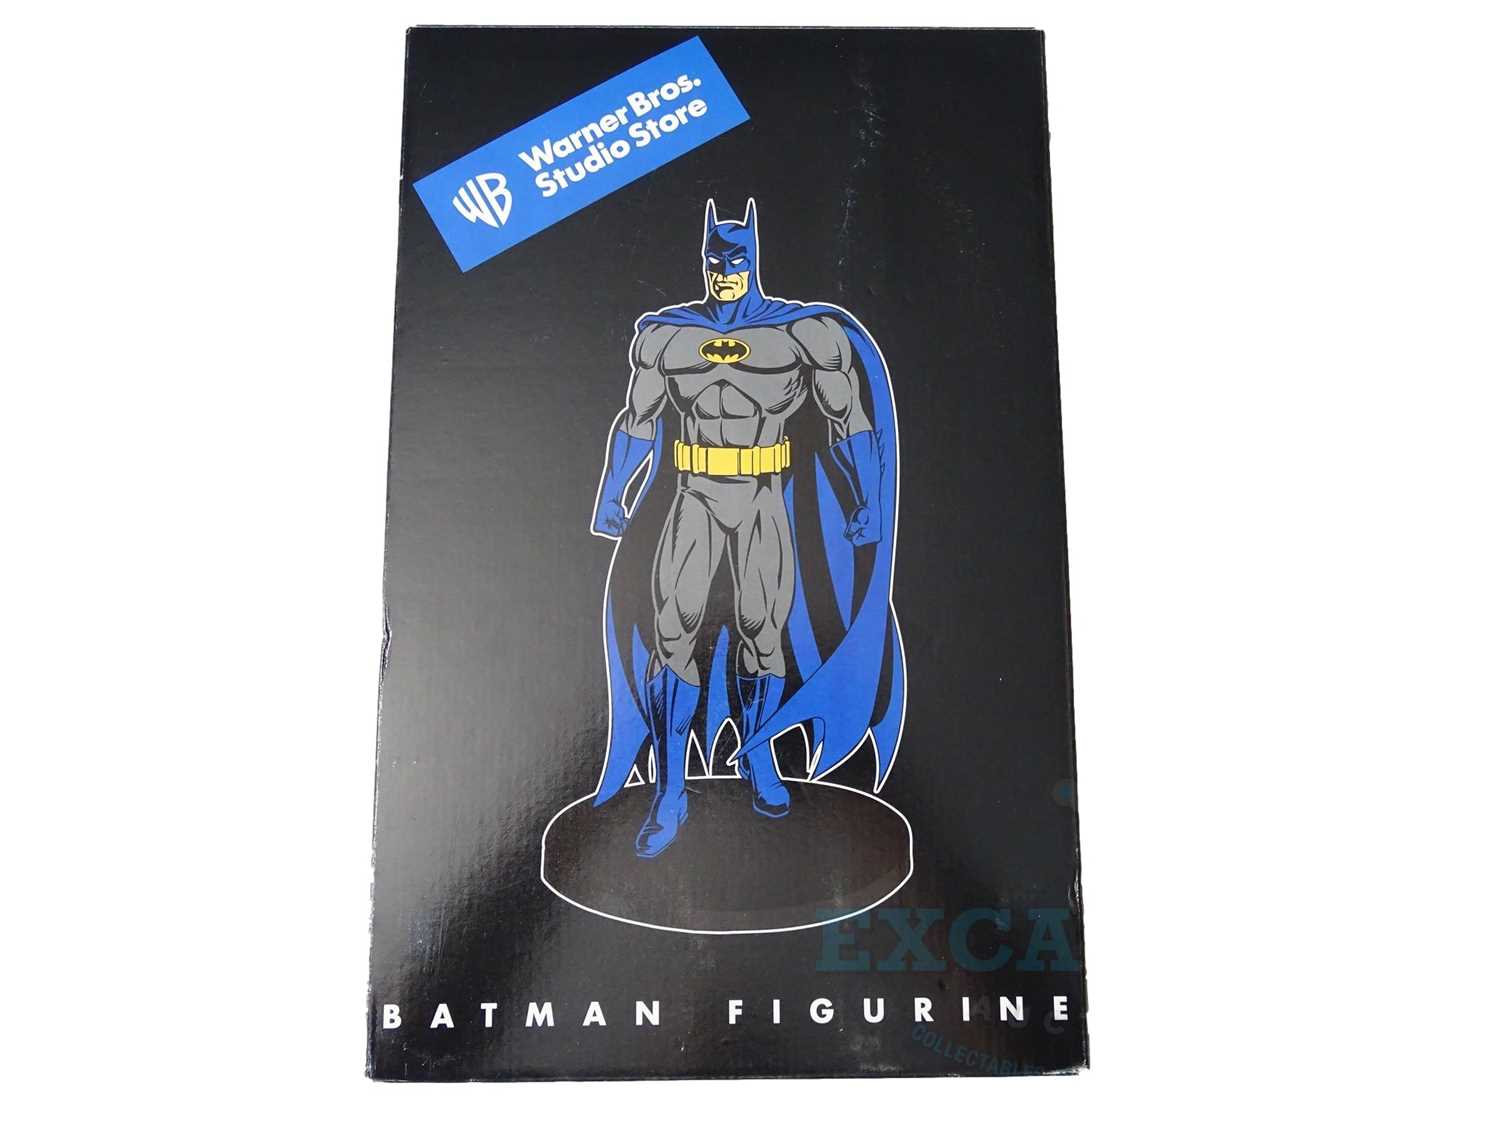 Lot 164 - Warner Bros. Studio Store Batman figurine in